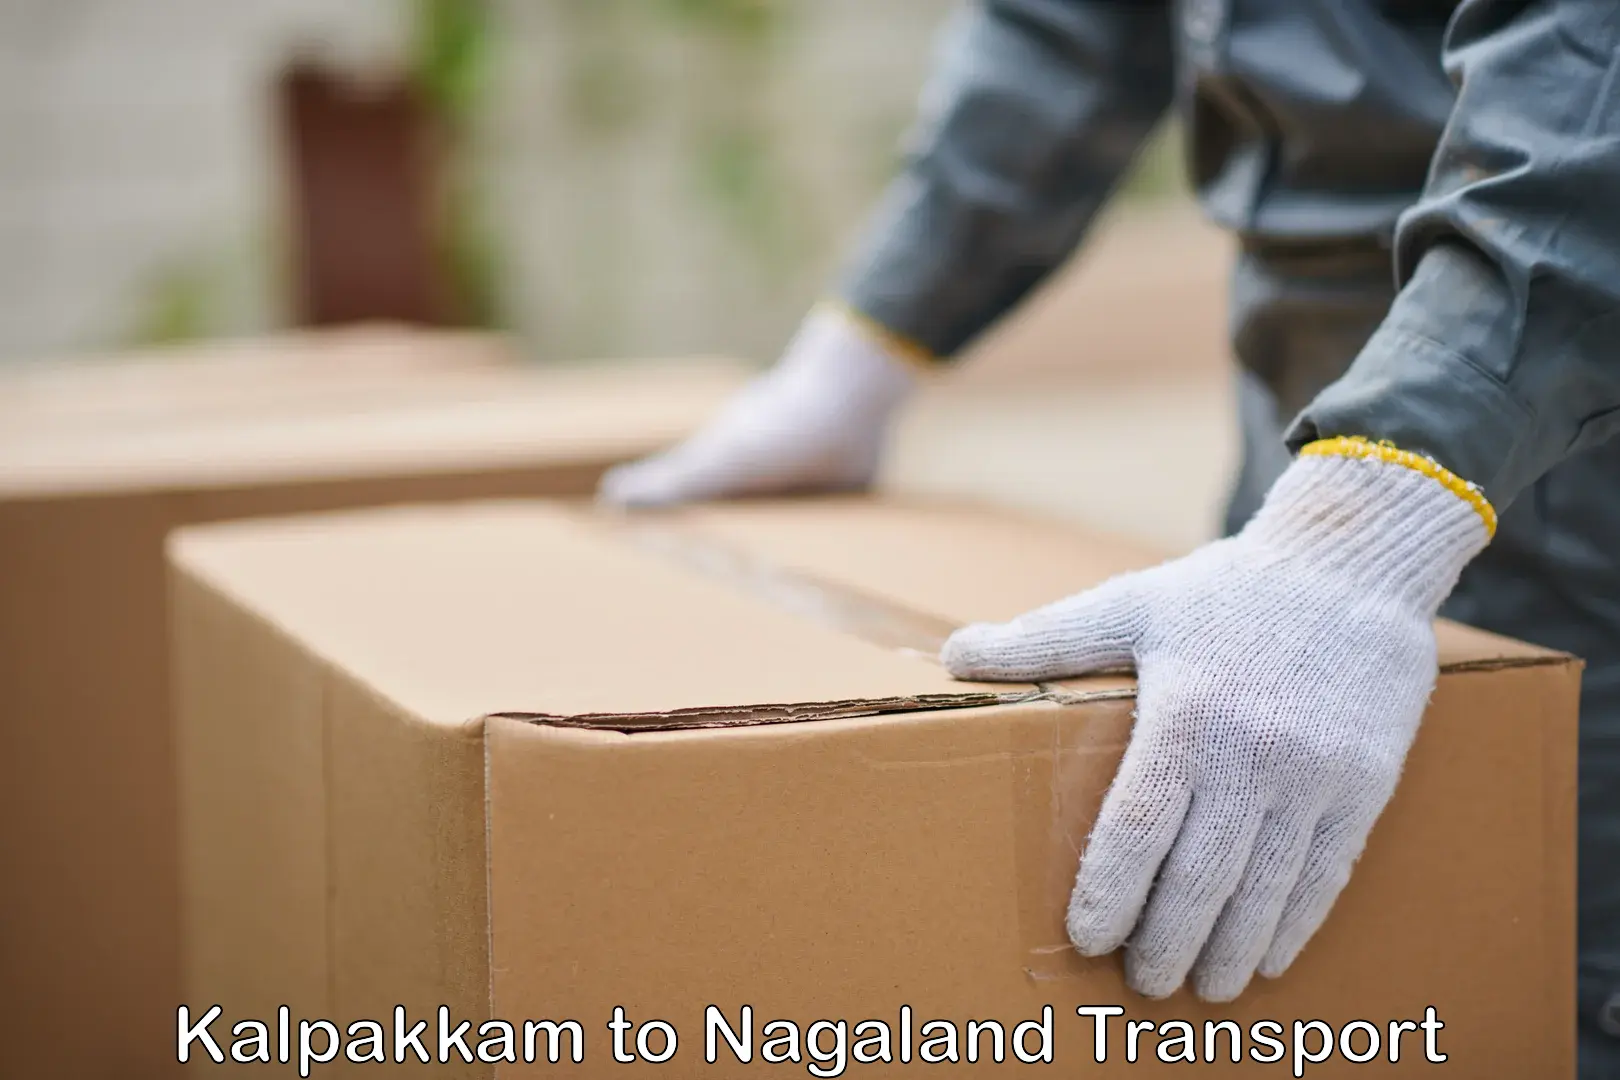 Nearby transport service Kalpakkam to Nagaland